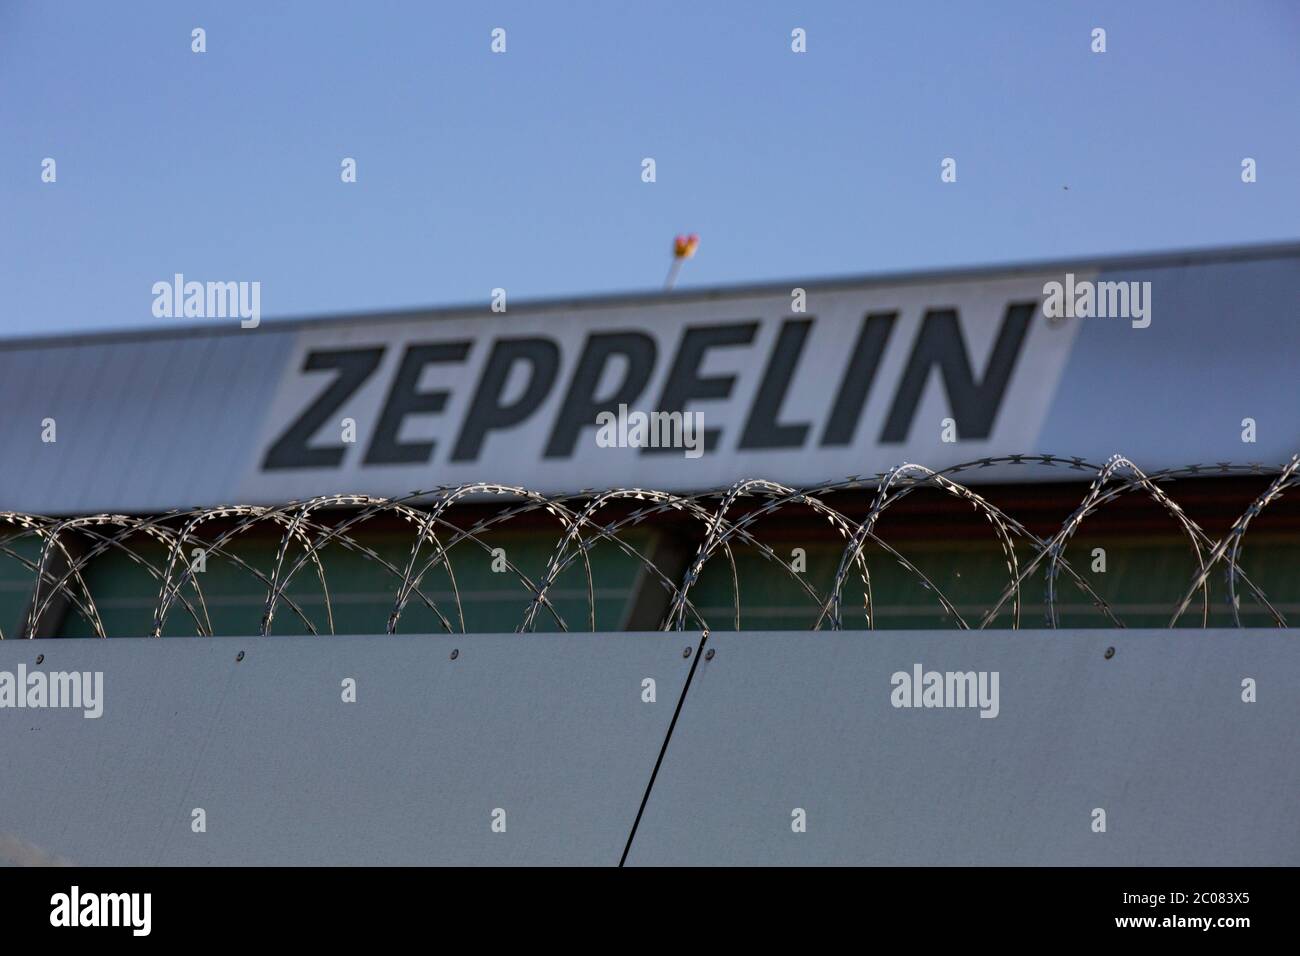 Überwachung von Coronaverstößen in der Region Bodensee-Oberschwaben aus dem Zeppelin NT. Friedrichshafen, 23.04.2020 Stock Photo